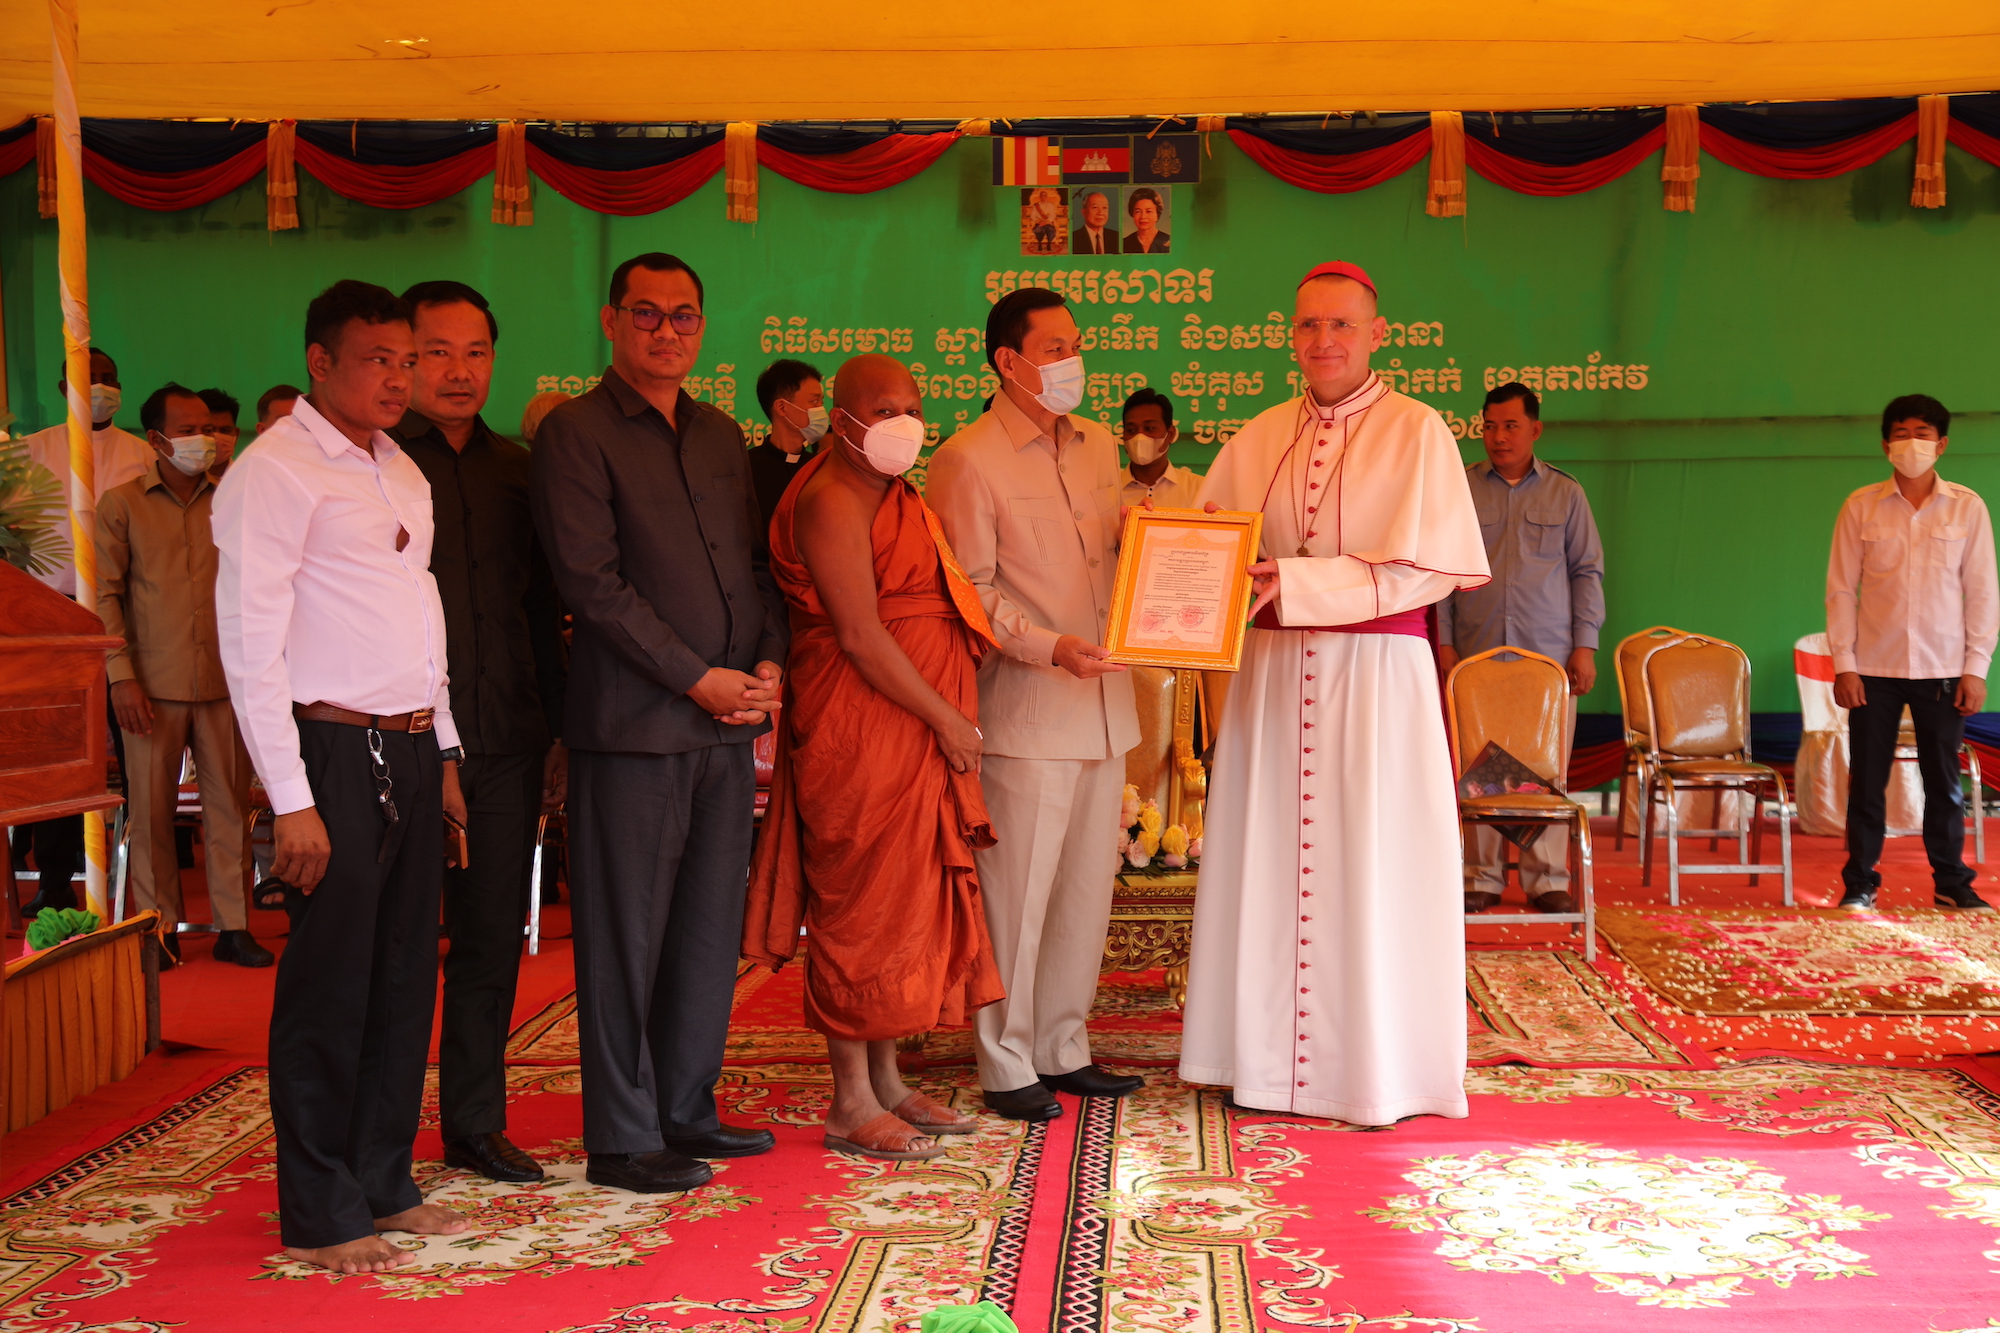 Буддийские лидеры чествуют католического епископа за его вклад в развитие общества